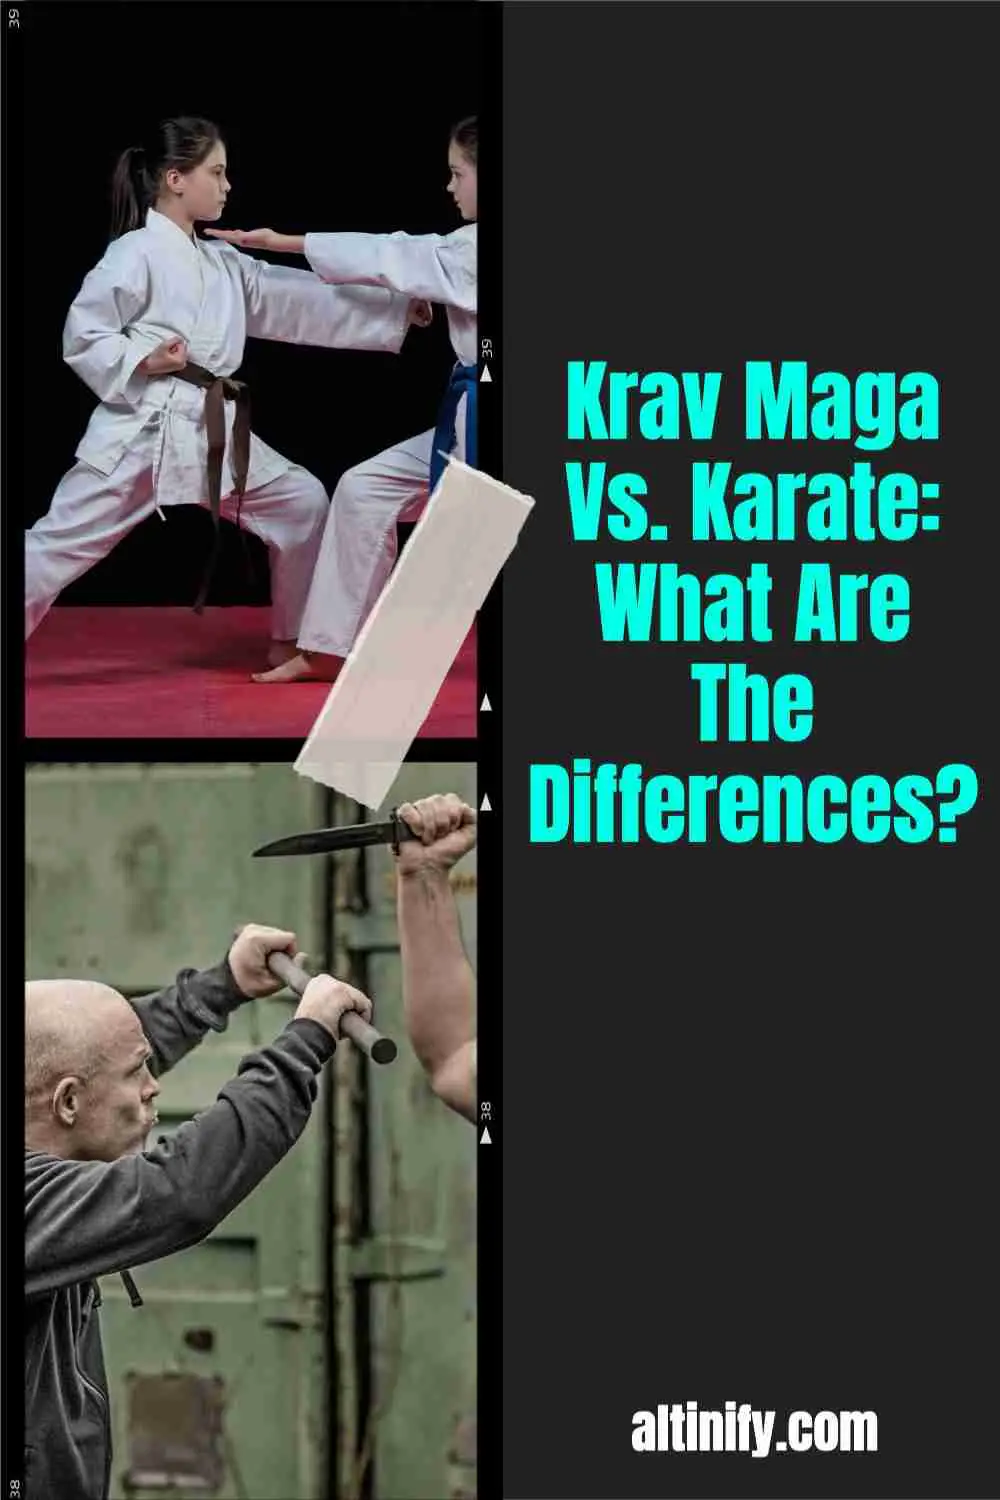 Krav Maga vs Karate: Which One Is Better?